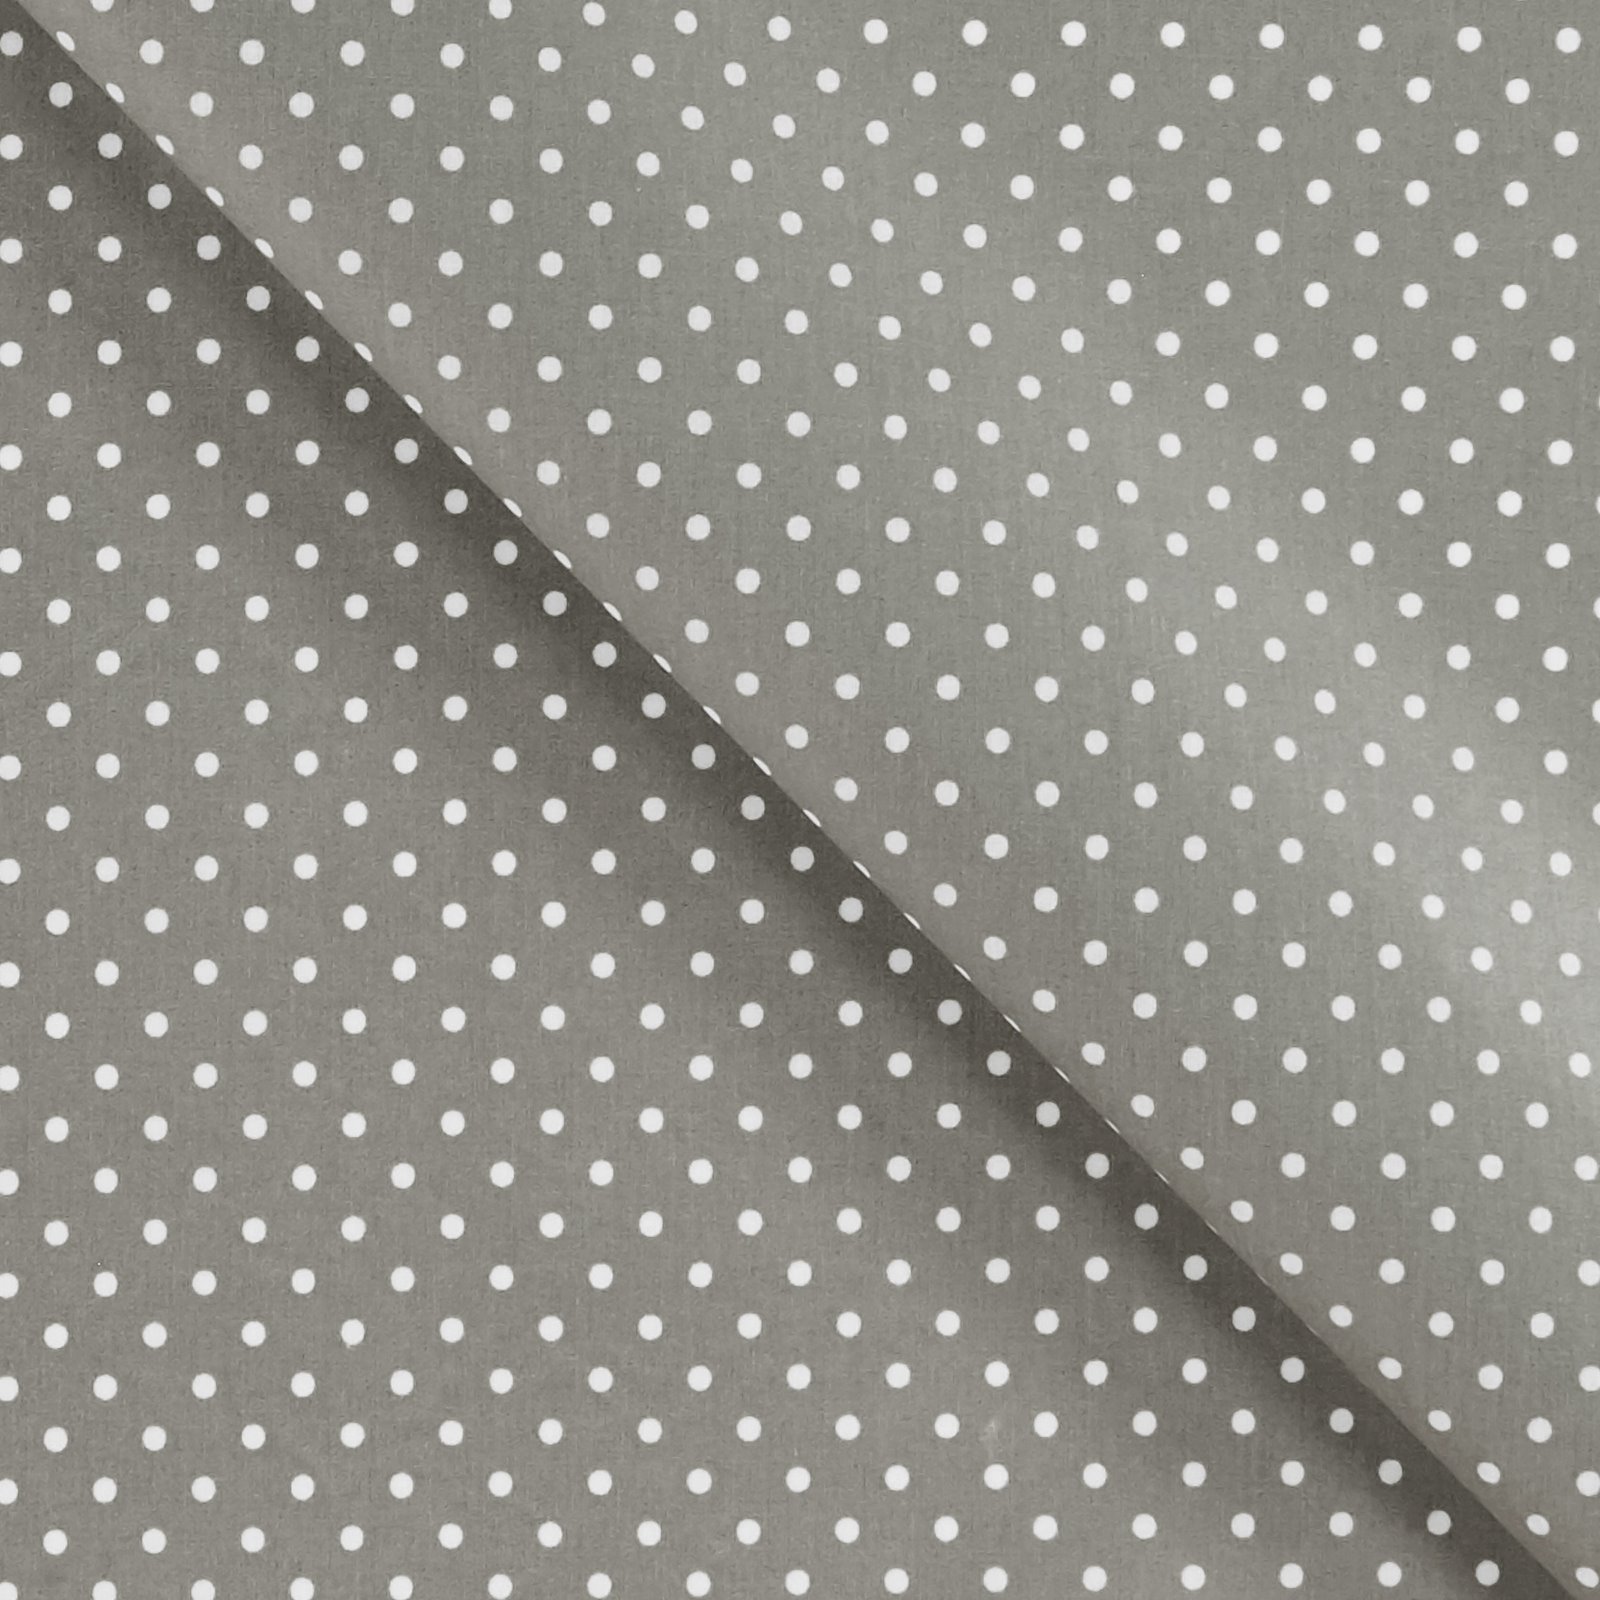 Textilwachstuch m/Punkten Grau/Weiß 860485_pack